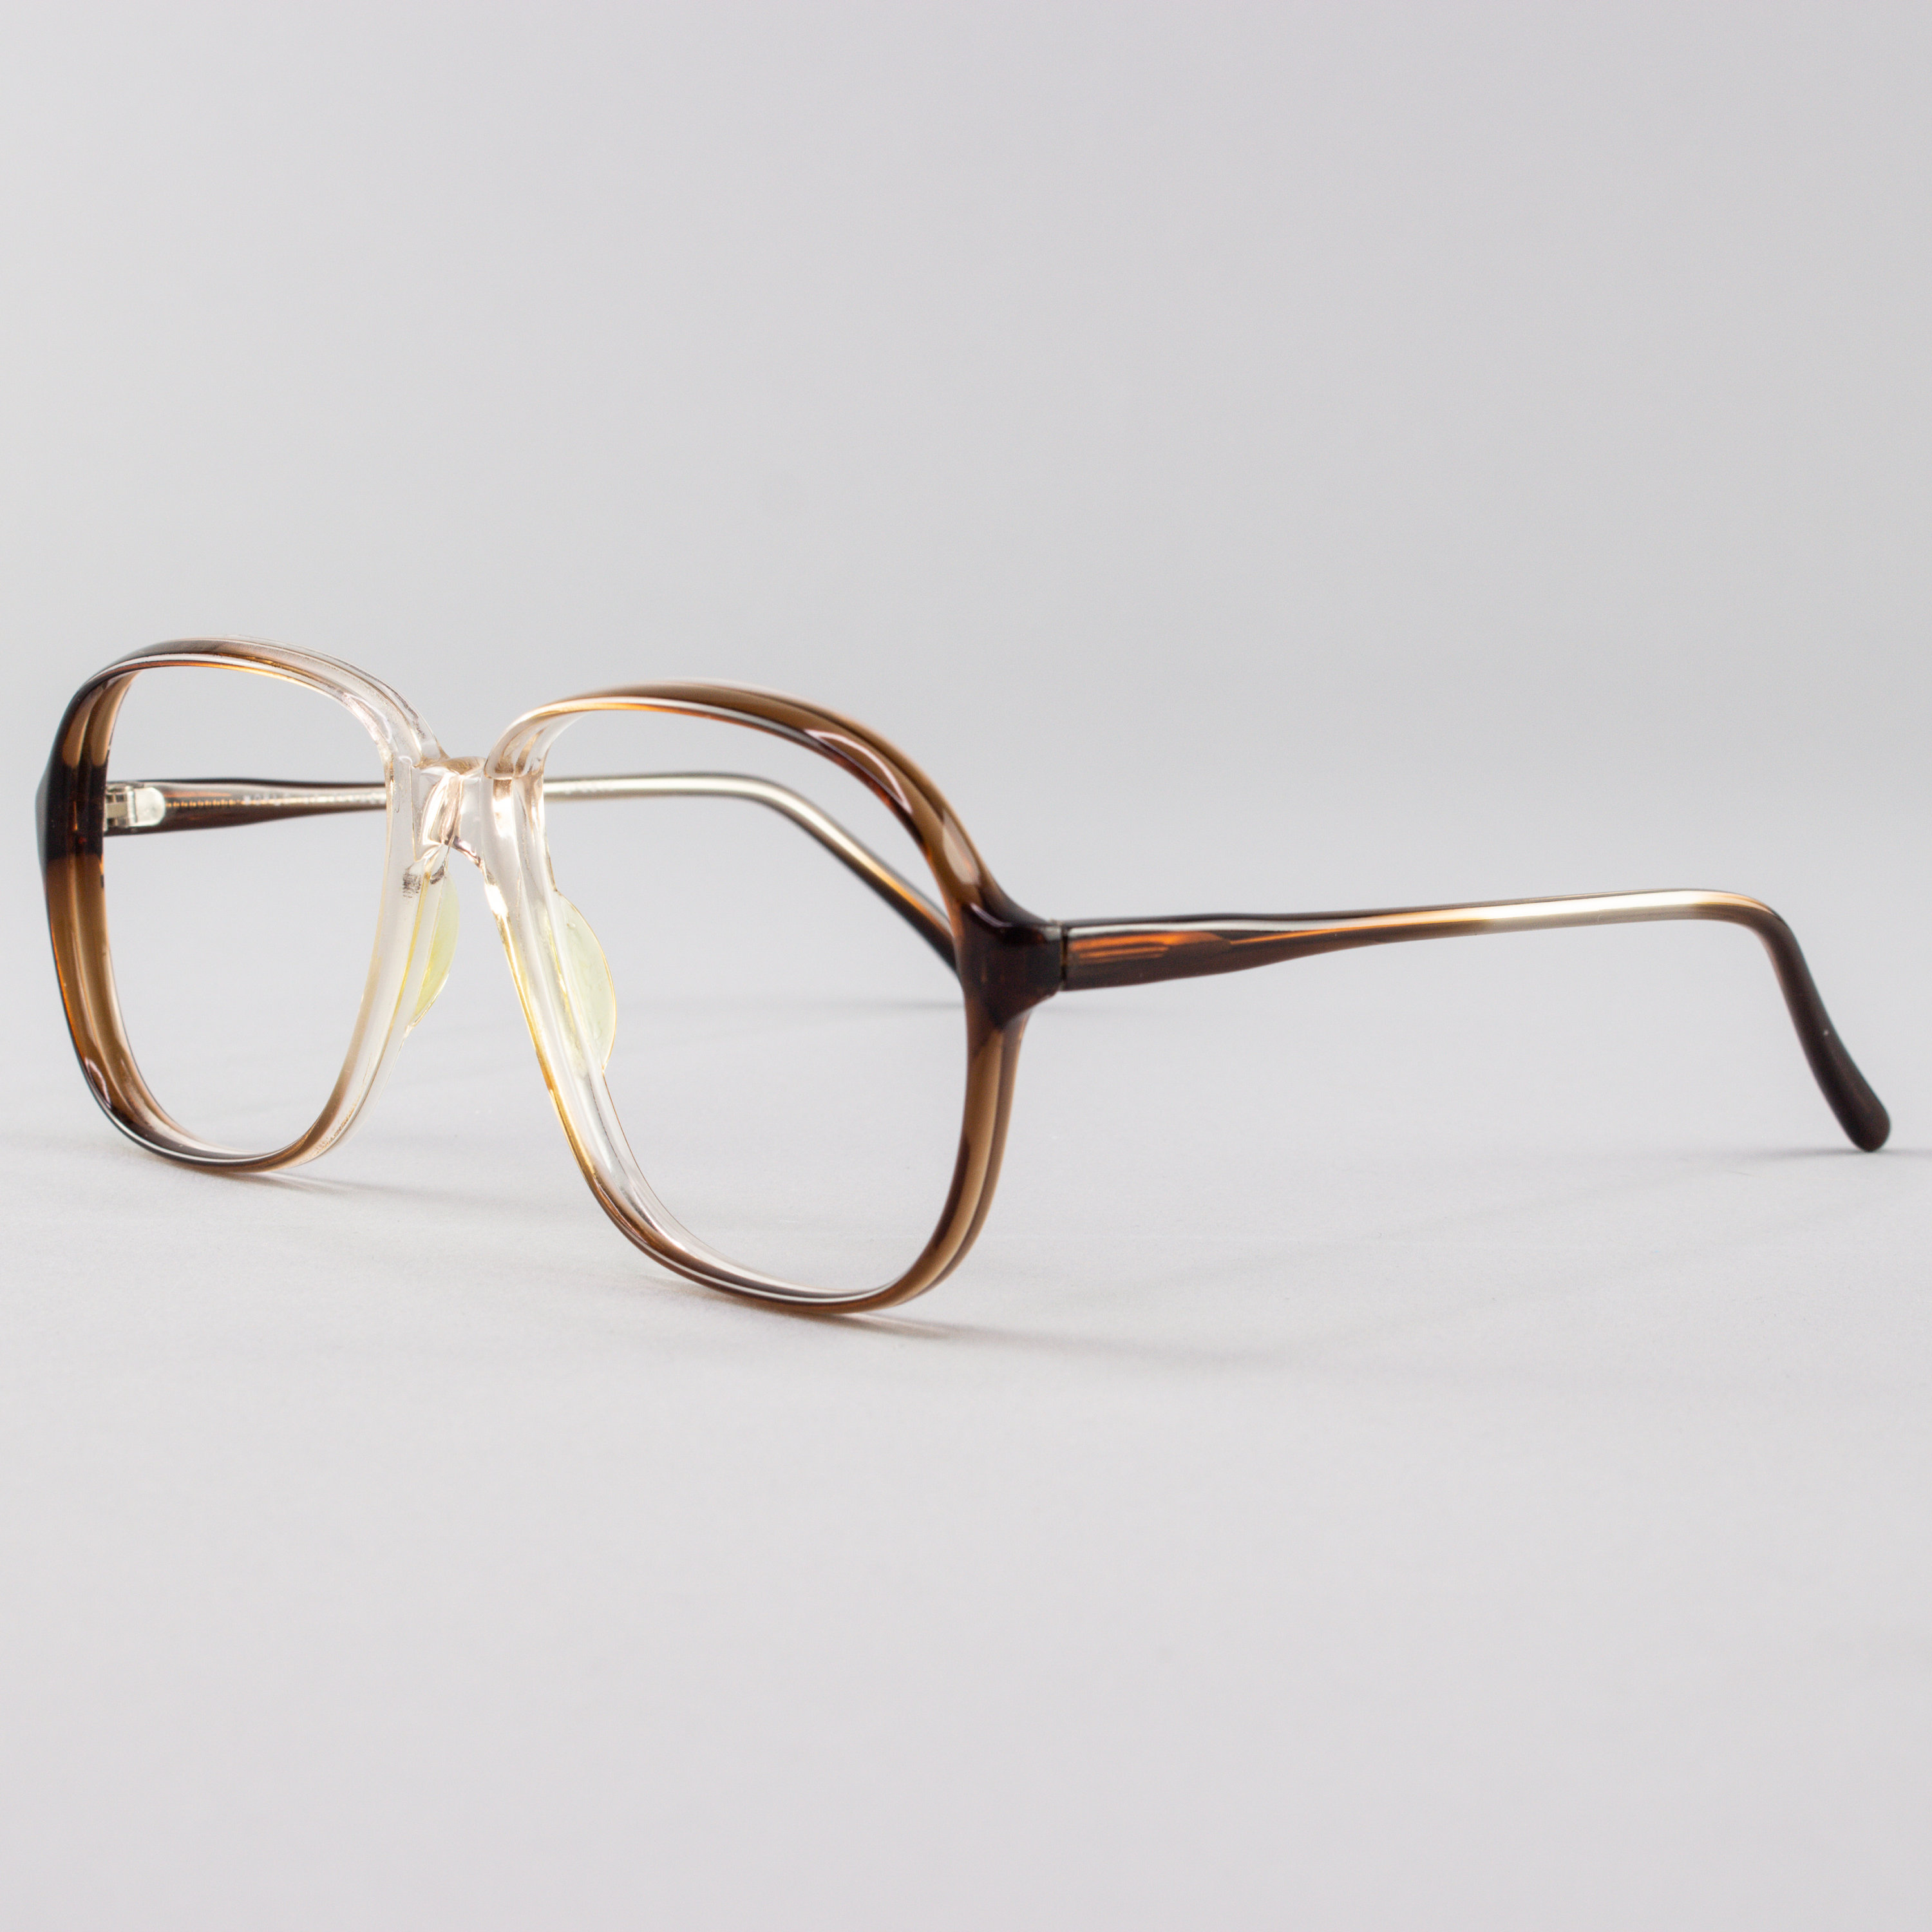 80s Vintage Eyeglass Frame Clear Brown Glasses Nos 1980s Glasses